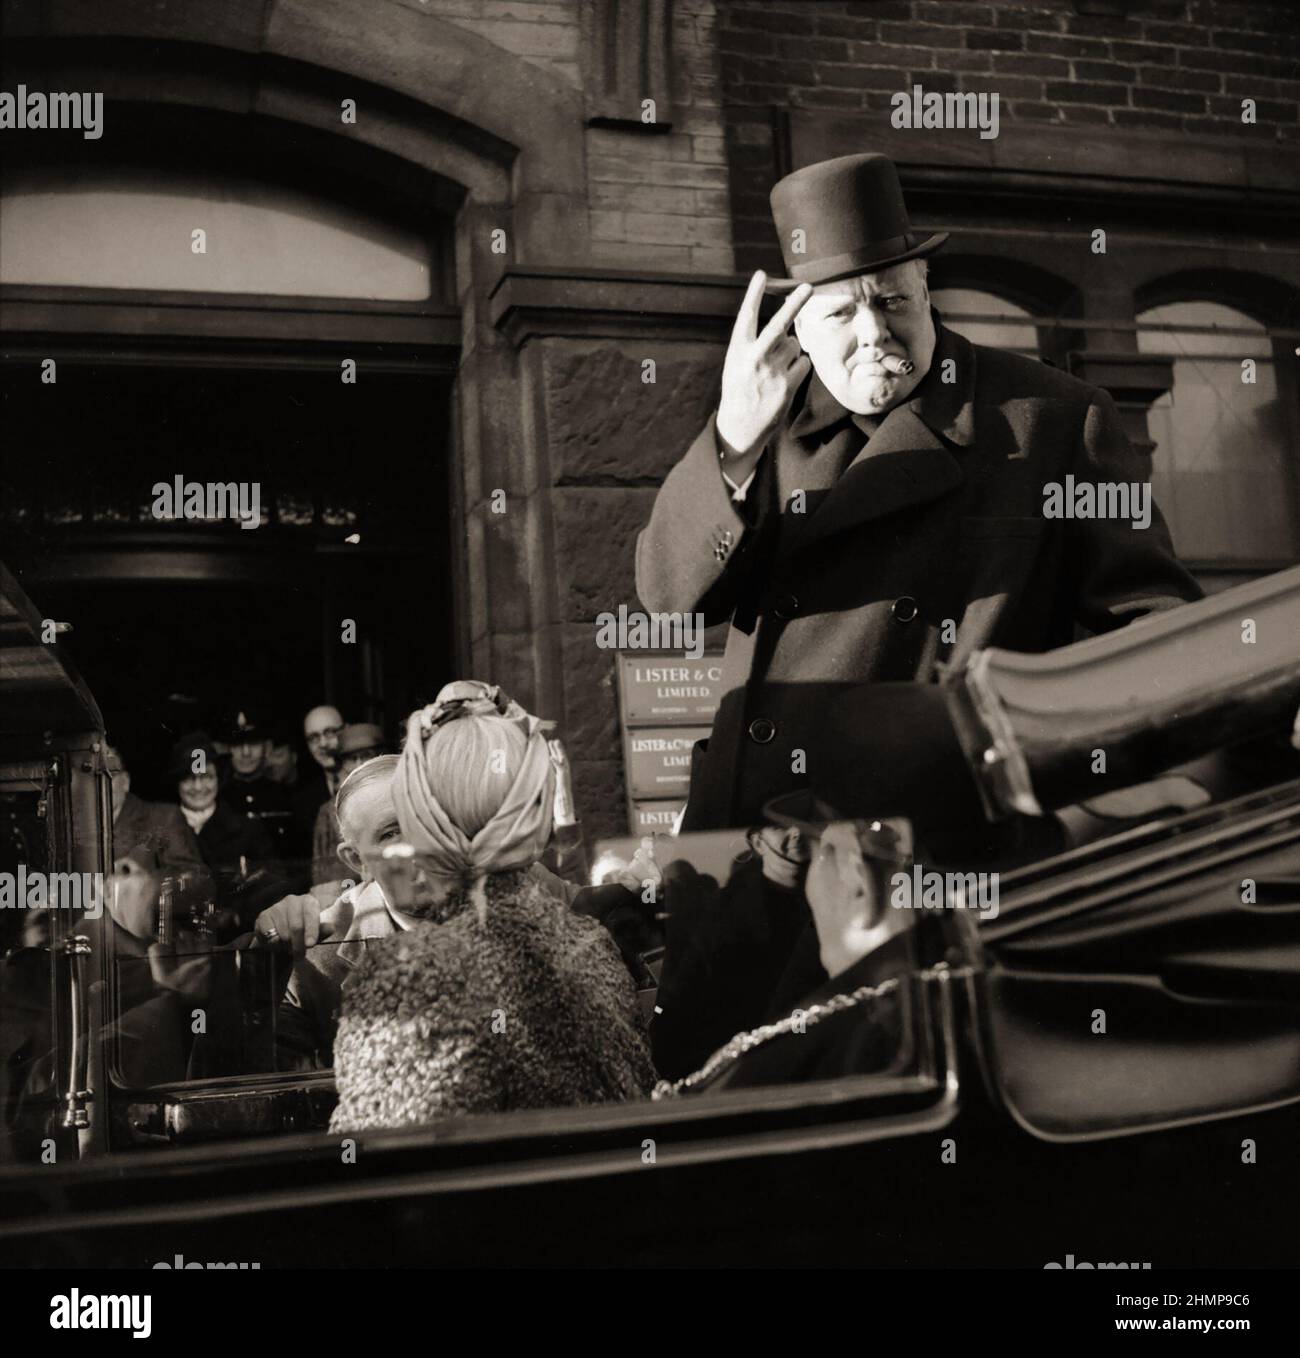 Winston Churchill 1874-1965, cigare en bouche, donne son célèbre V pour le signe de la victoire lors d’une visite à Bradford, le 4 décembre 1942. Banque D'Images